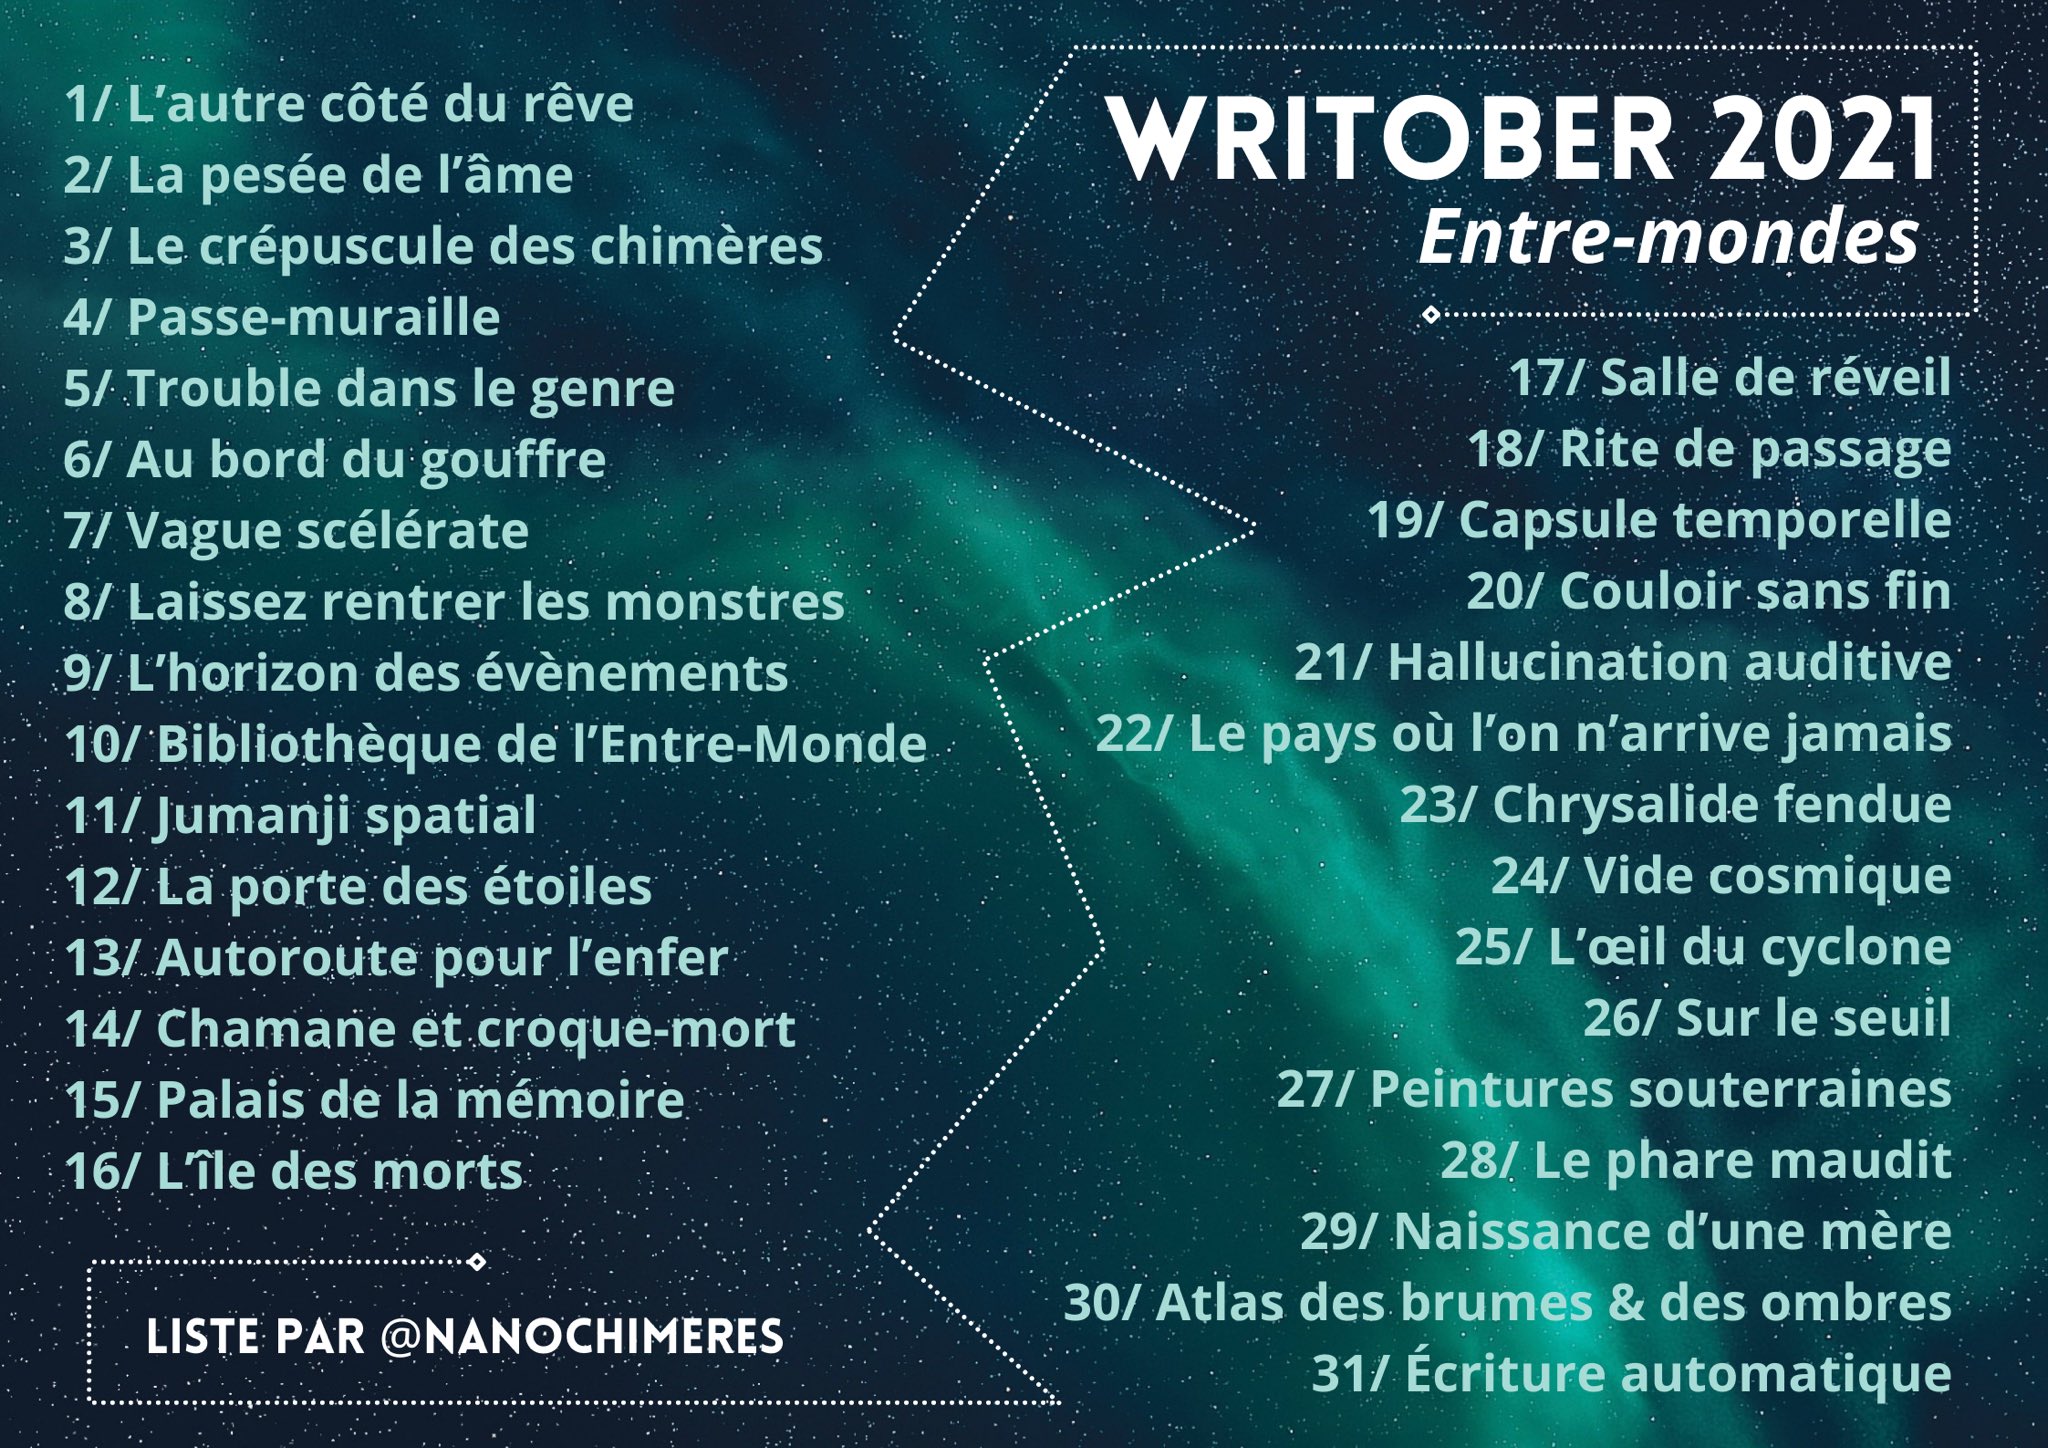 La liste officielle par @Nanochimères